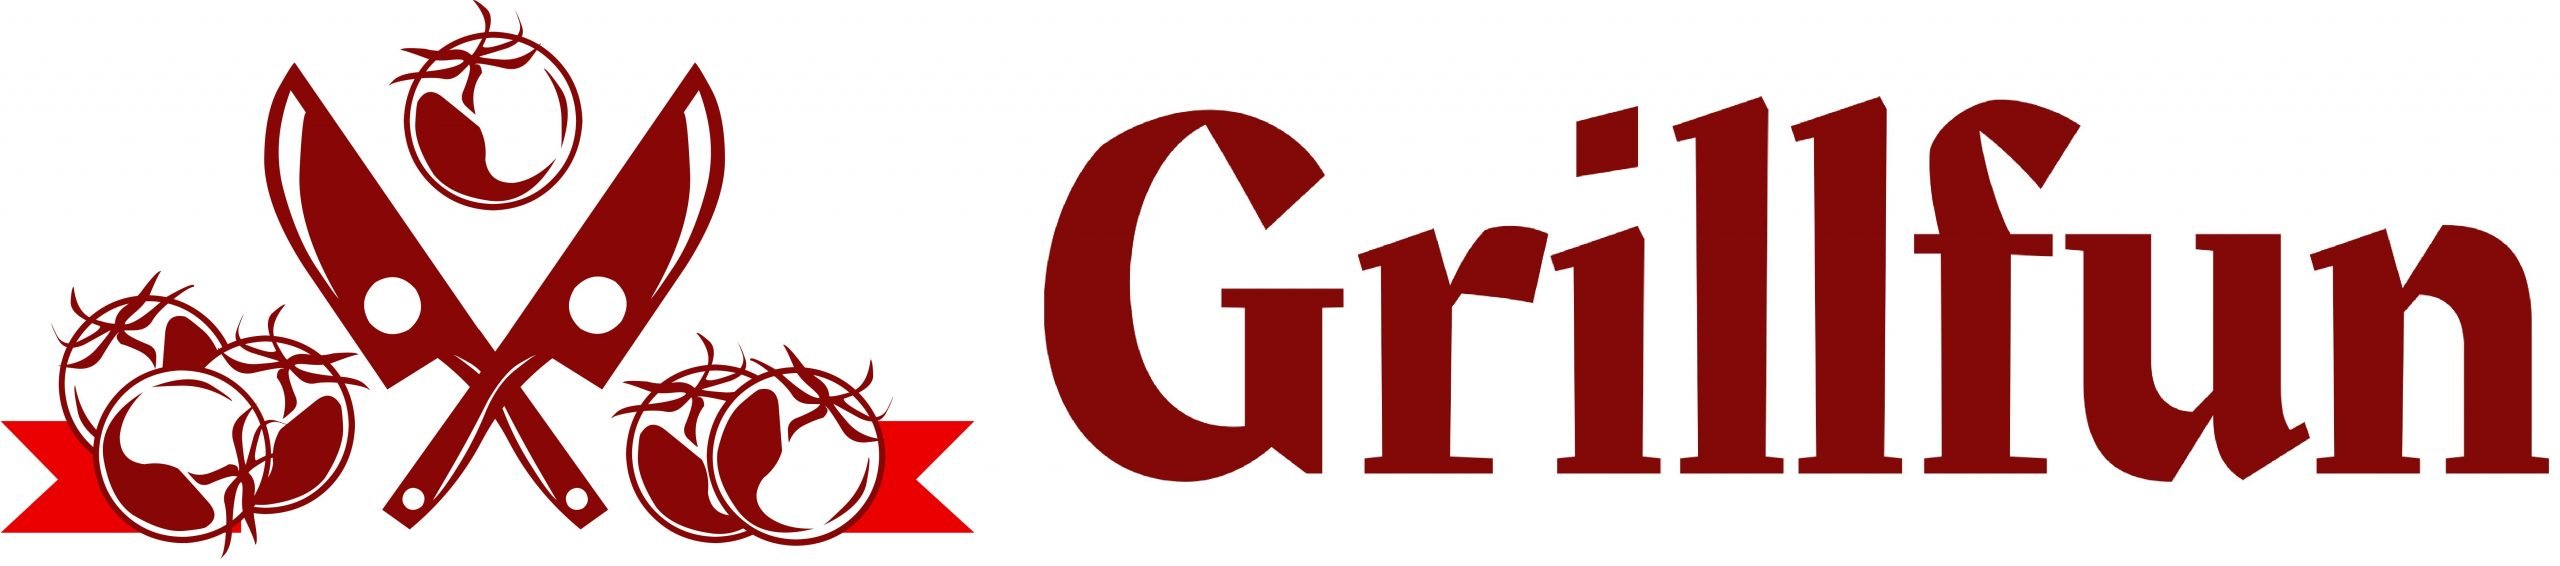 Grillfun logo